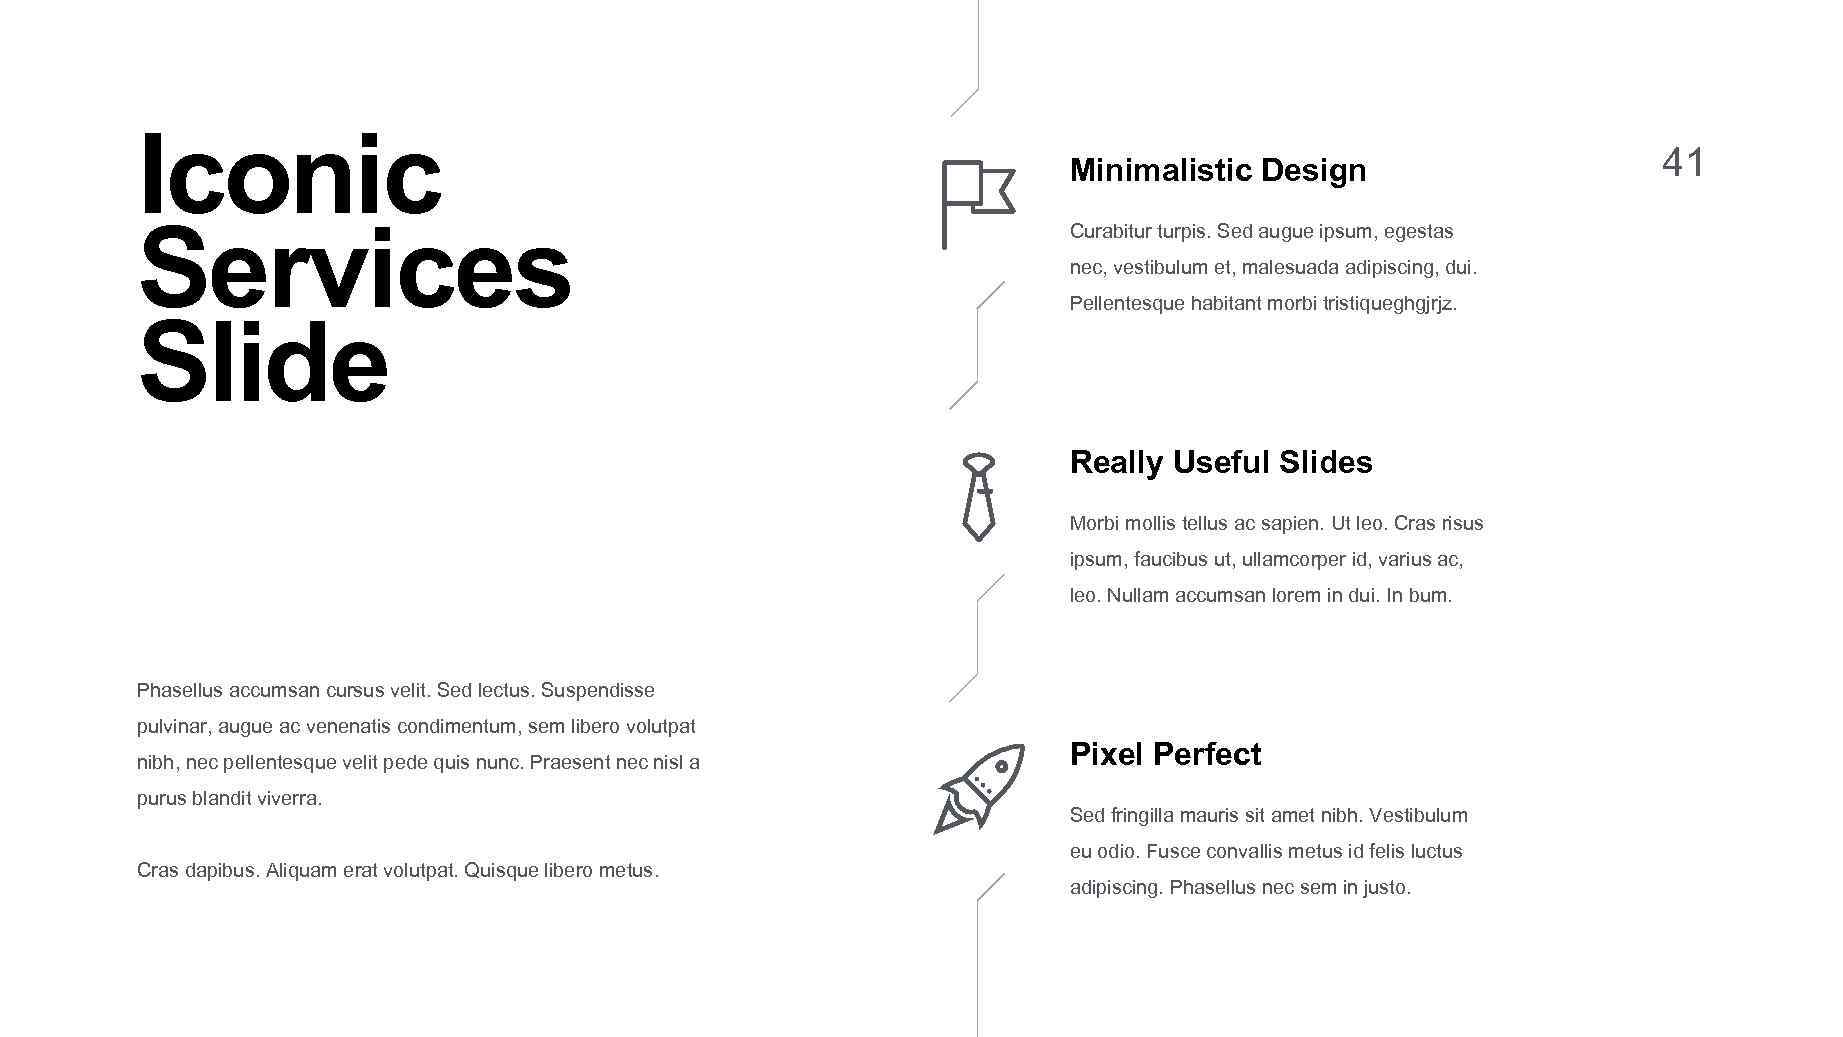 Iconic Services Slide Minimalistic Design Curabitur turpis. Sed augue ipsum, egestas nec, vestibulum et,